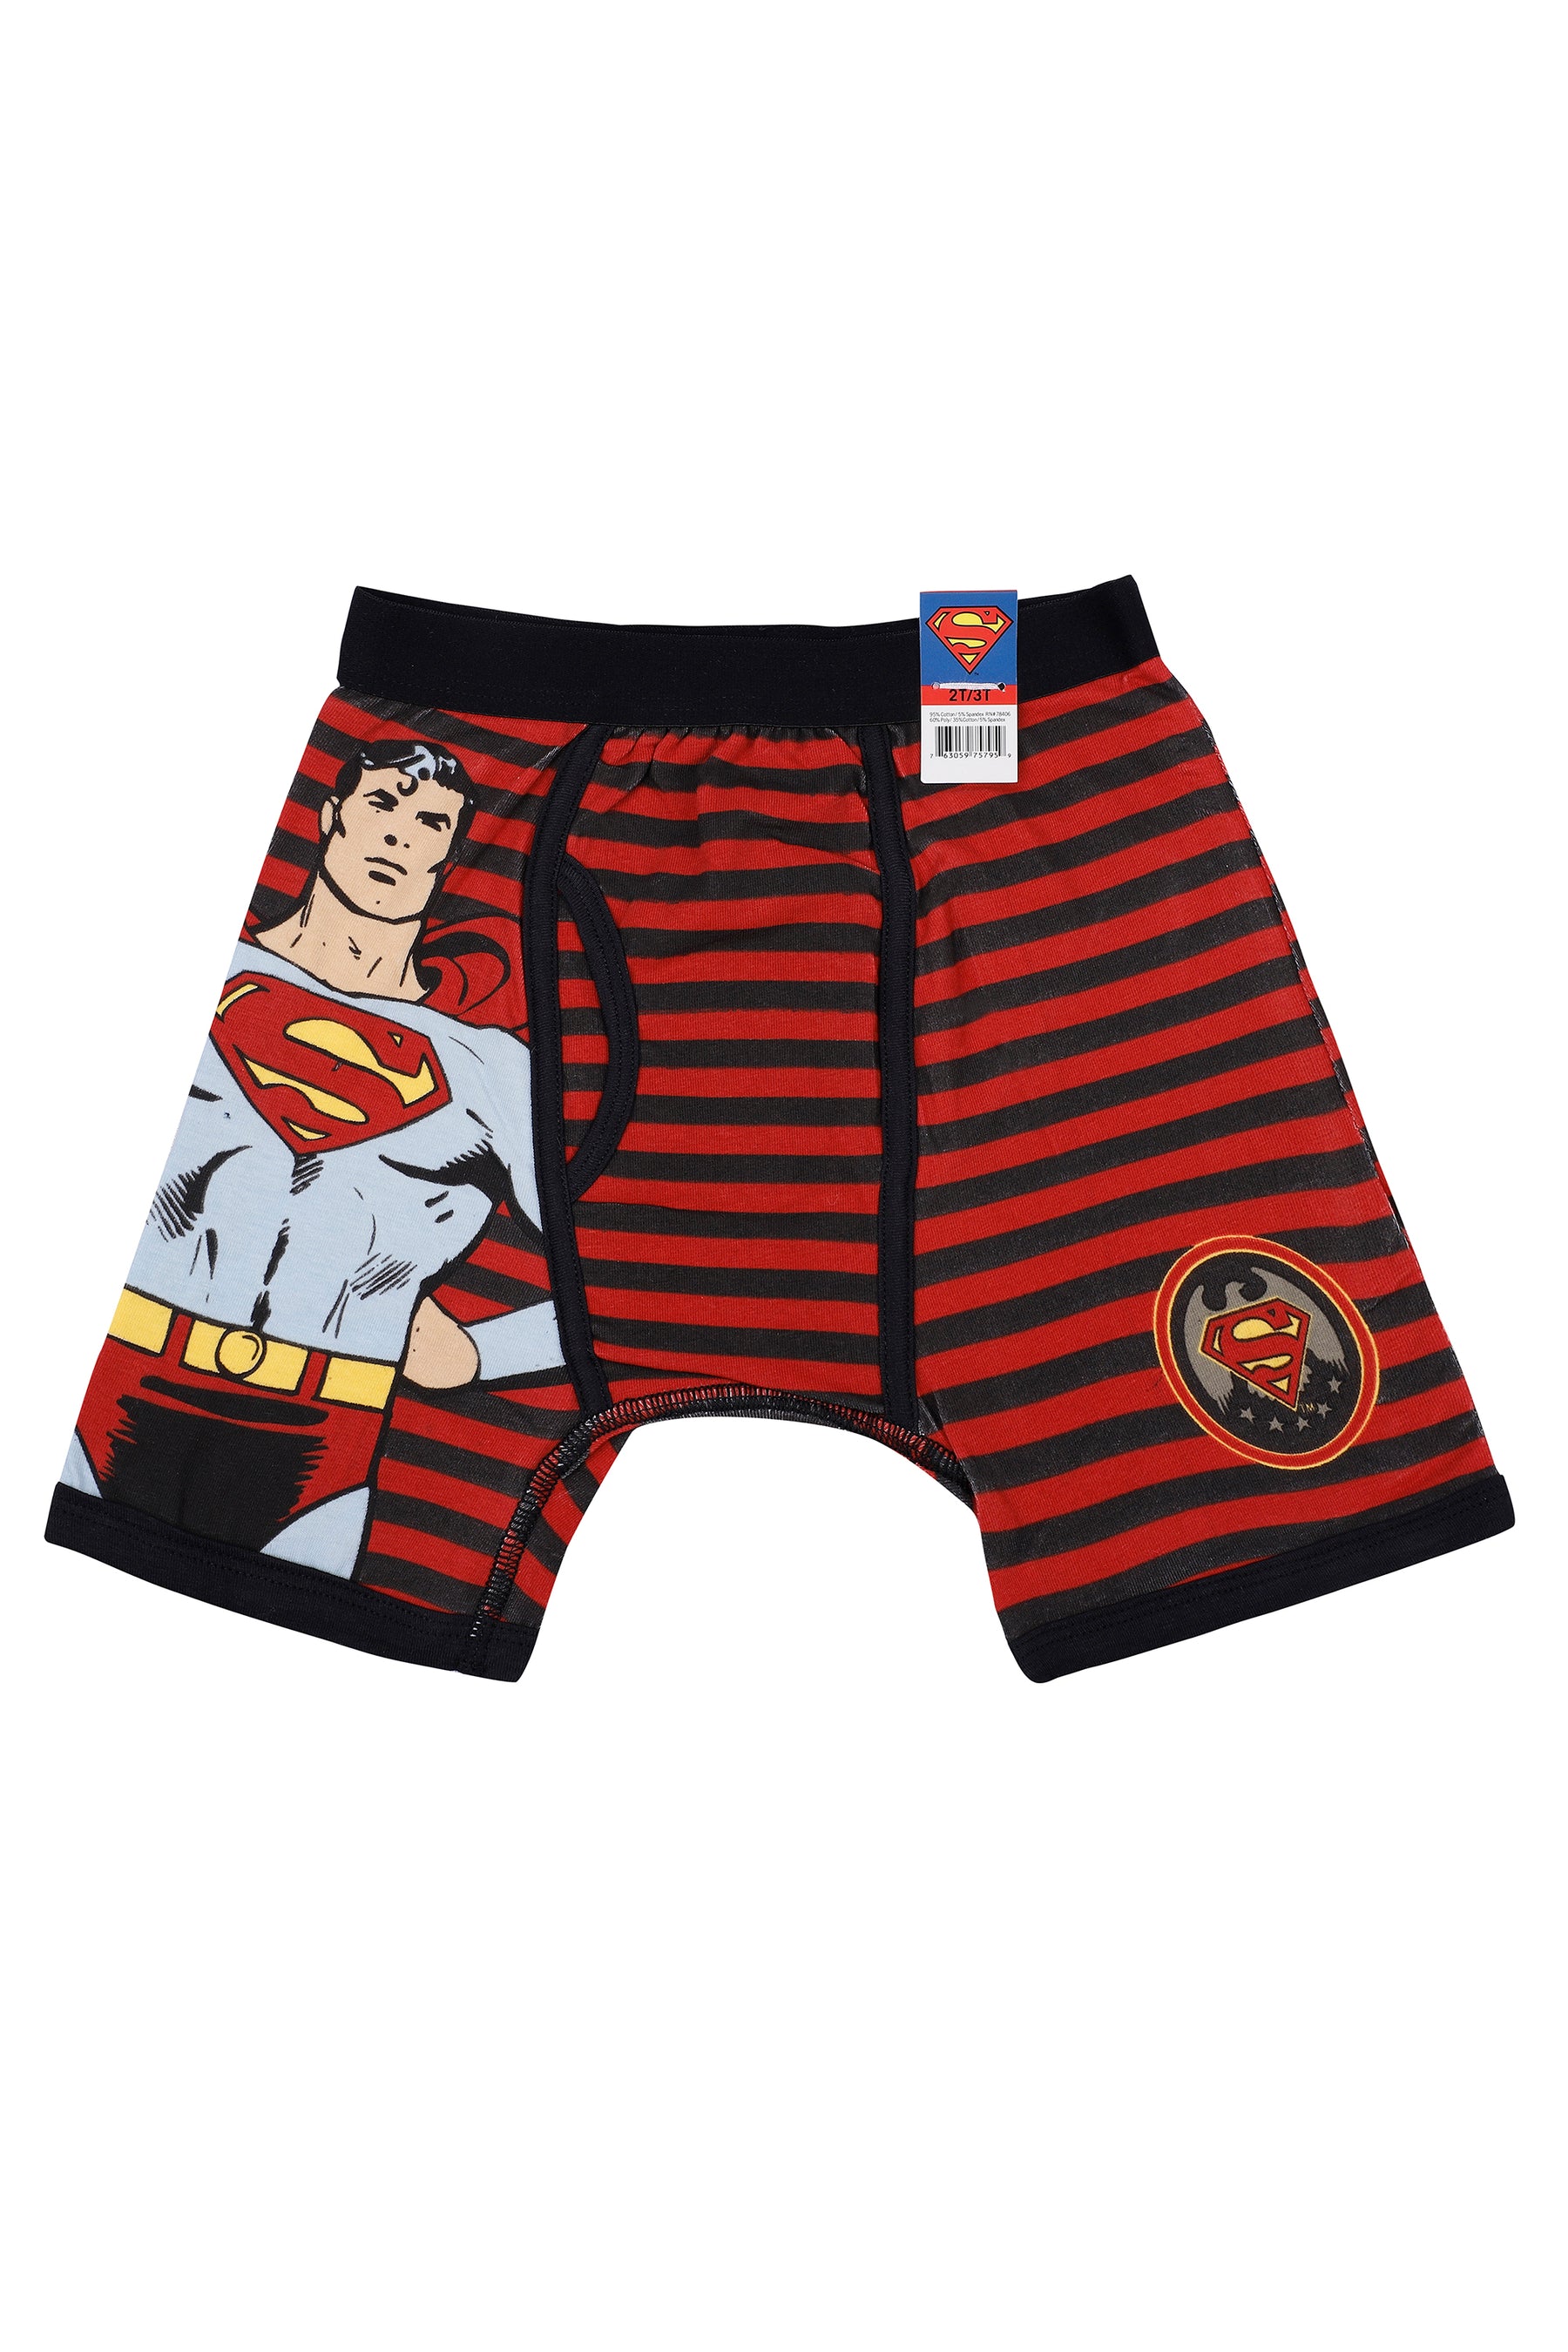 Batman Logo Boxer Shorts Underpants - Official Merchandise